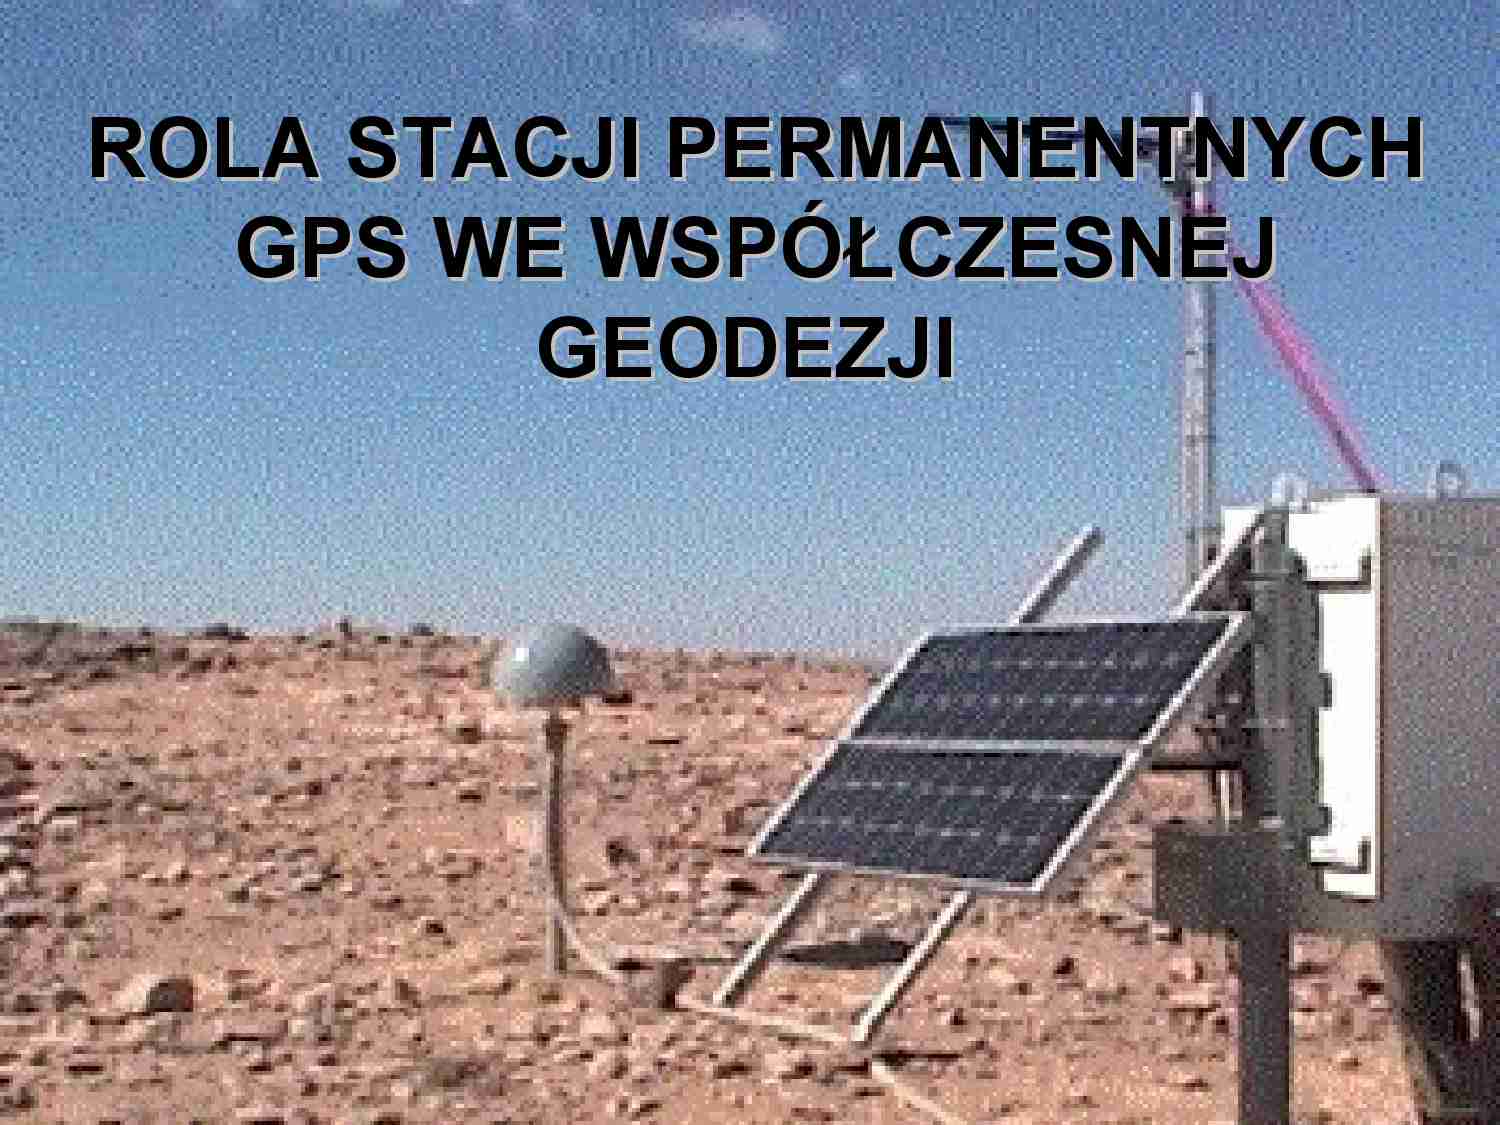 Rola stacji permanentnych GPS we współczesnej geodezji - strona 1